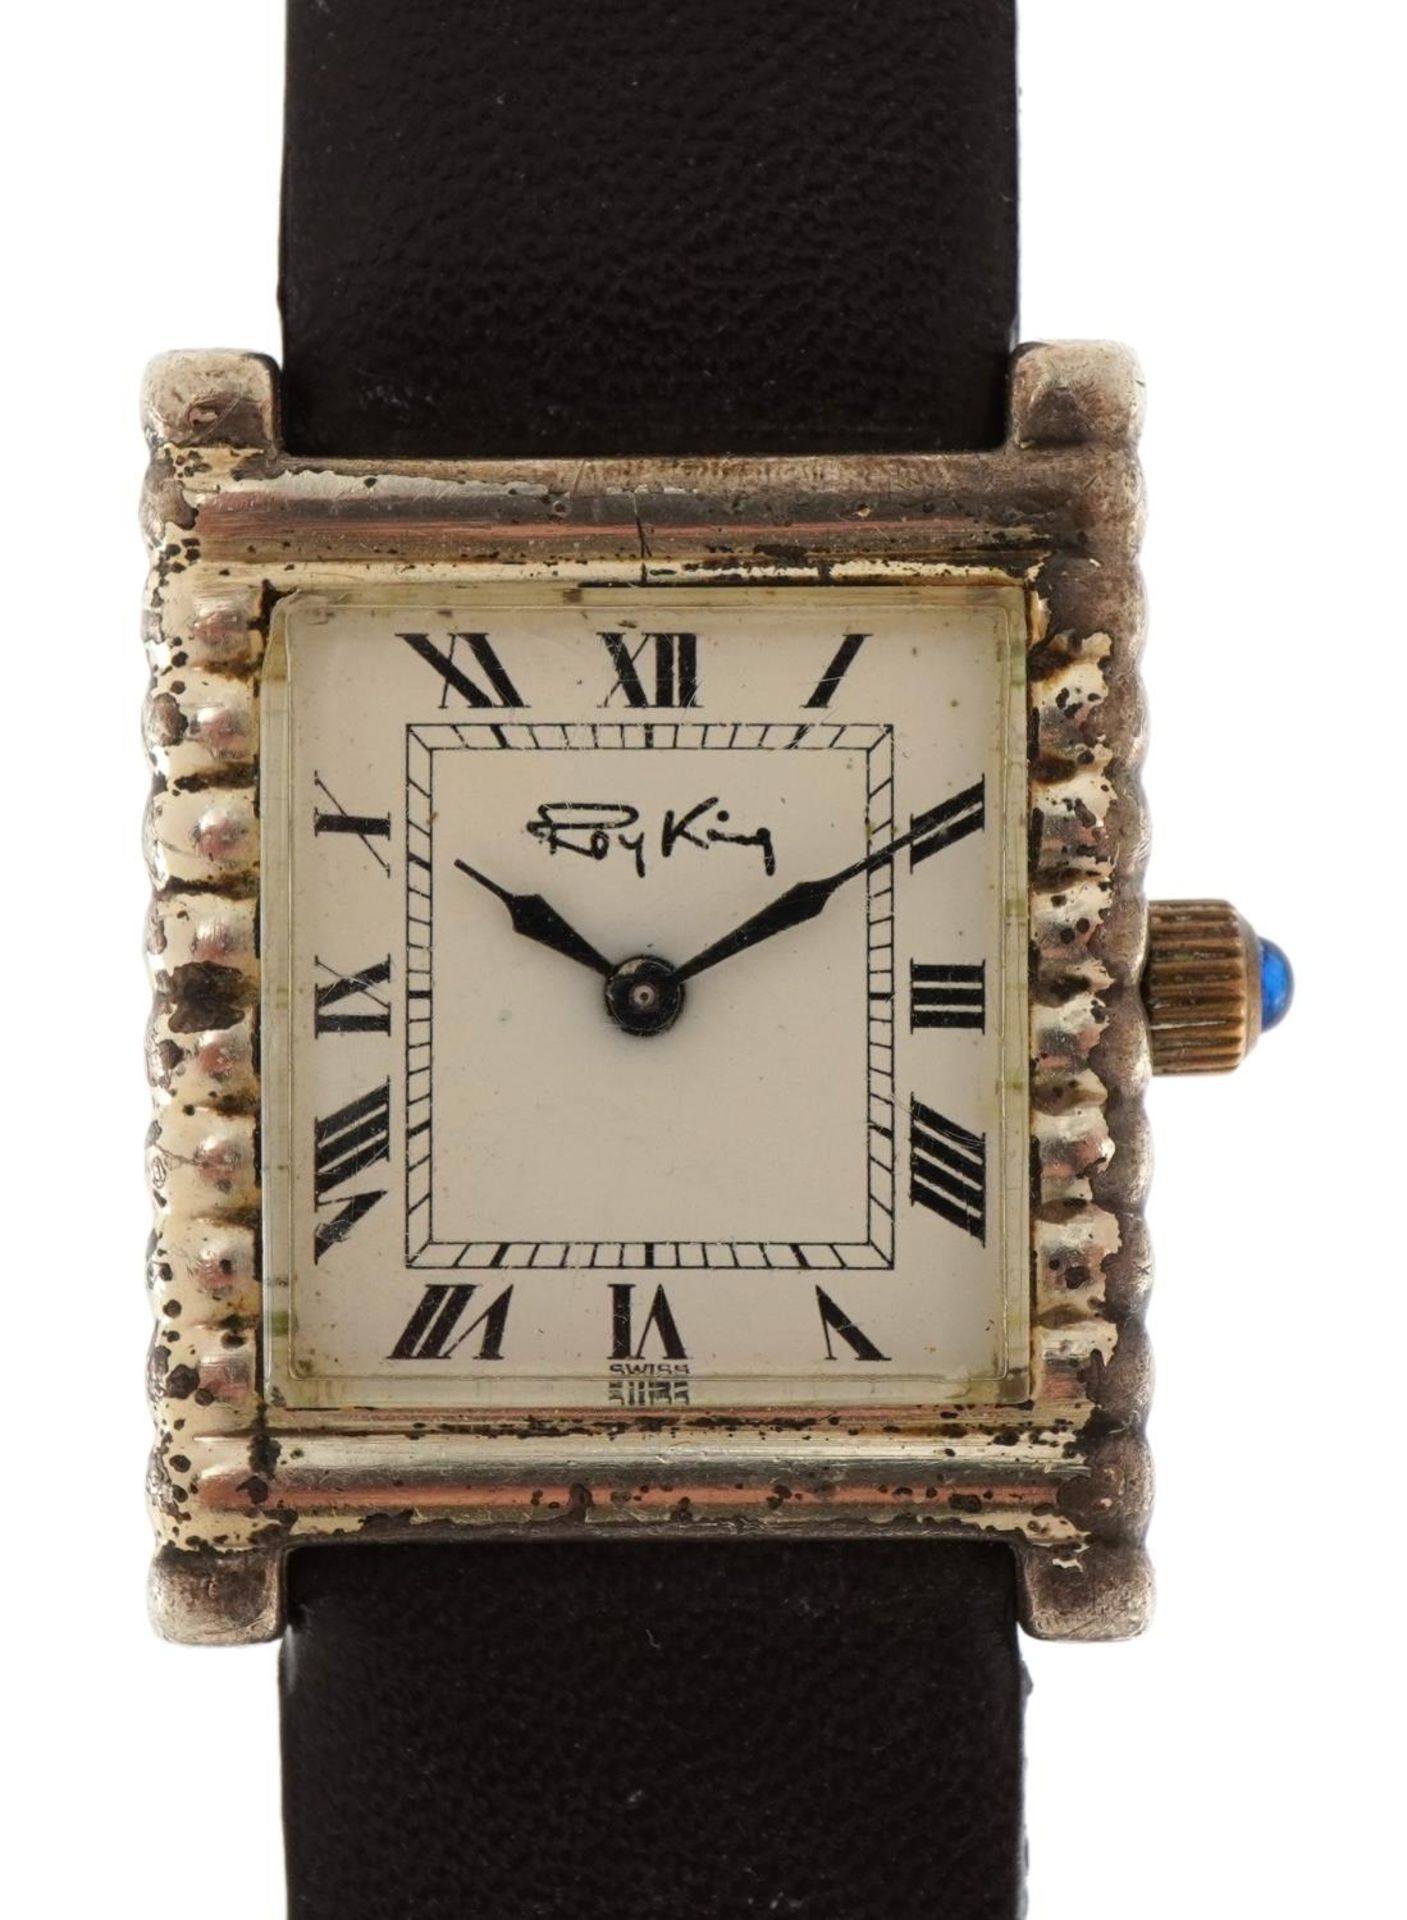 Roy King silver wristwatch, London 1975, 24mm wide